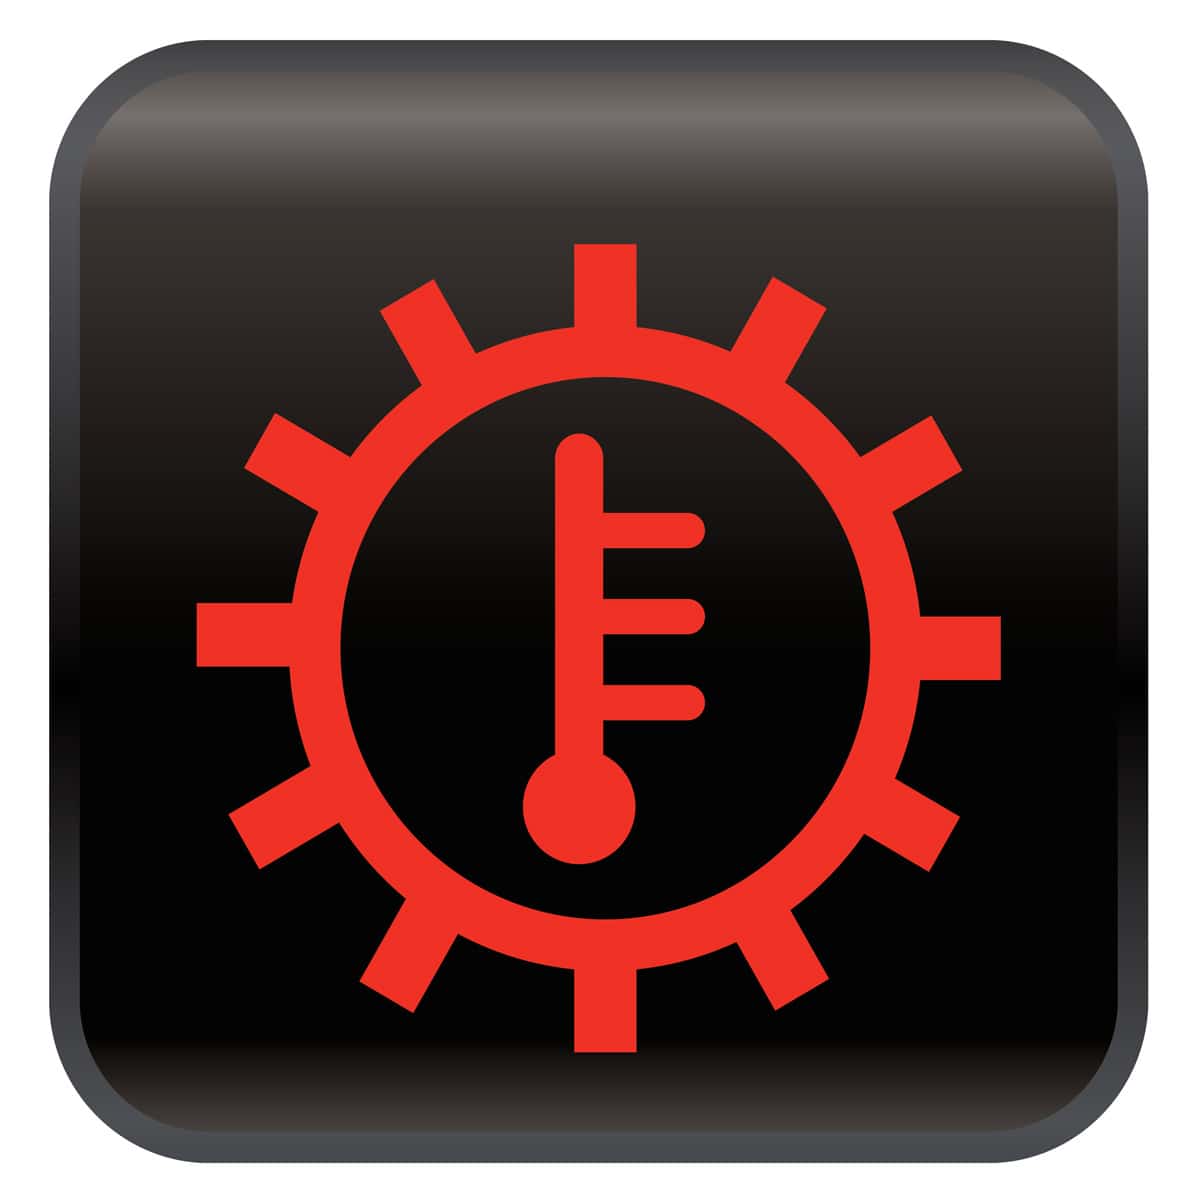 Transmission Temperature car warning light symbol/